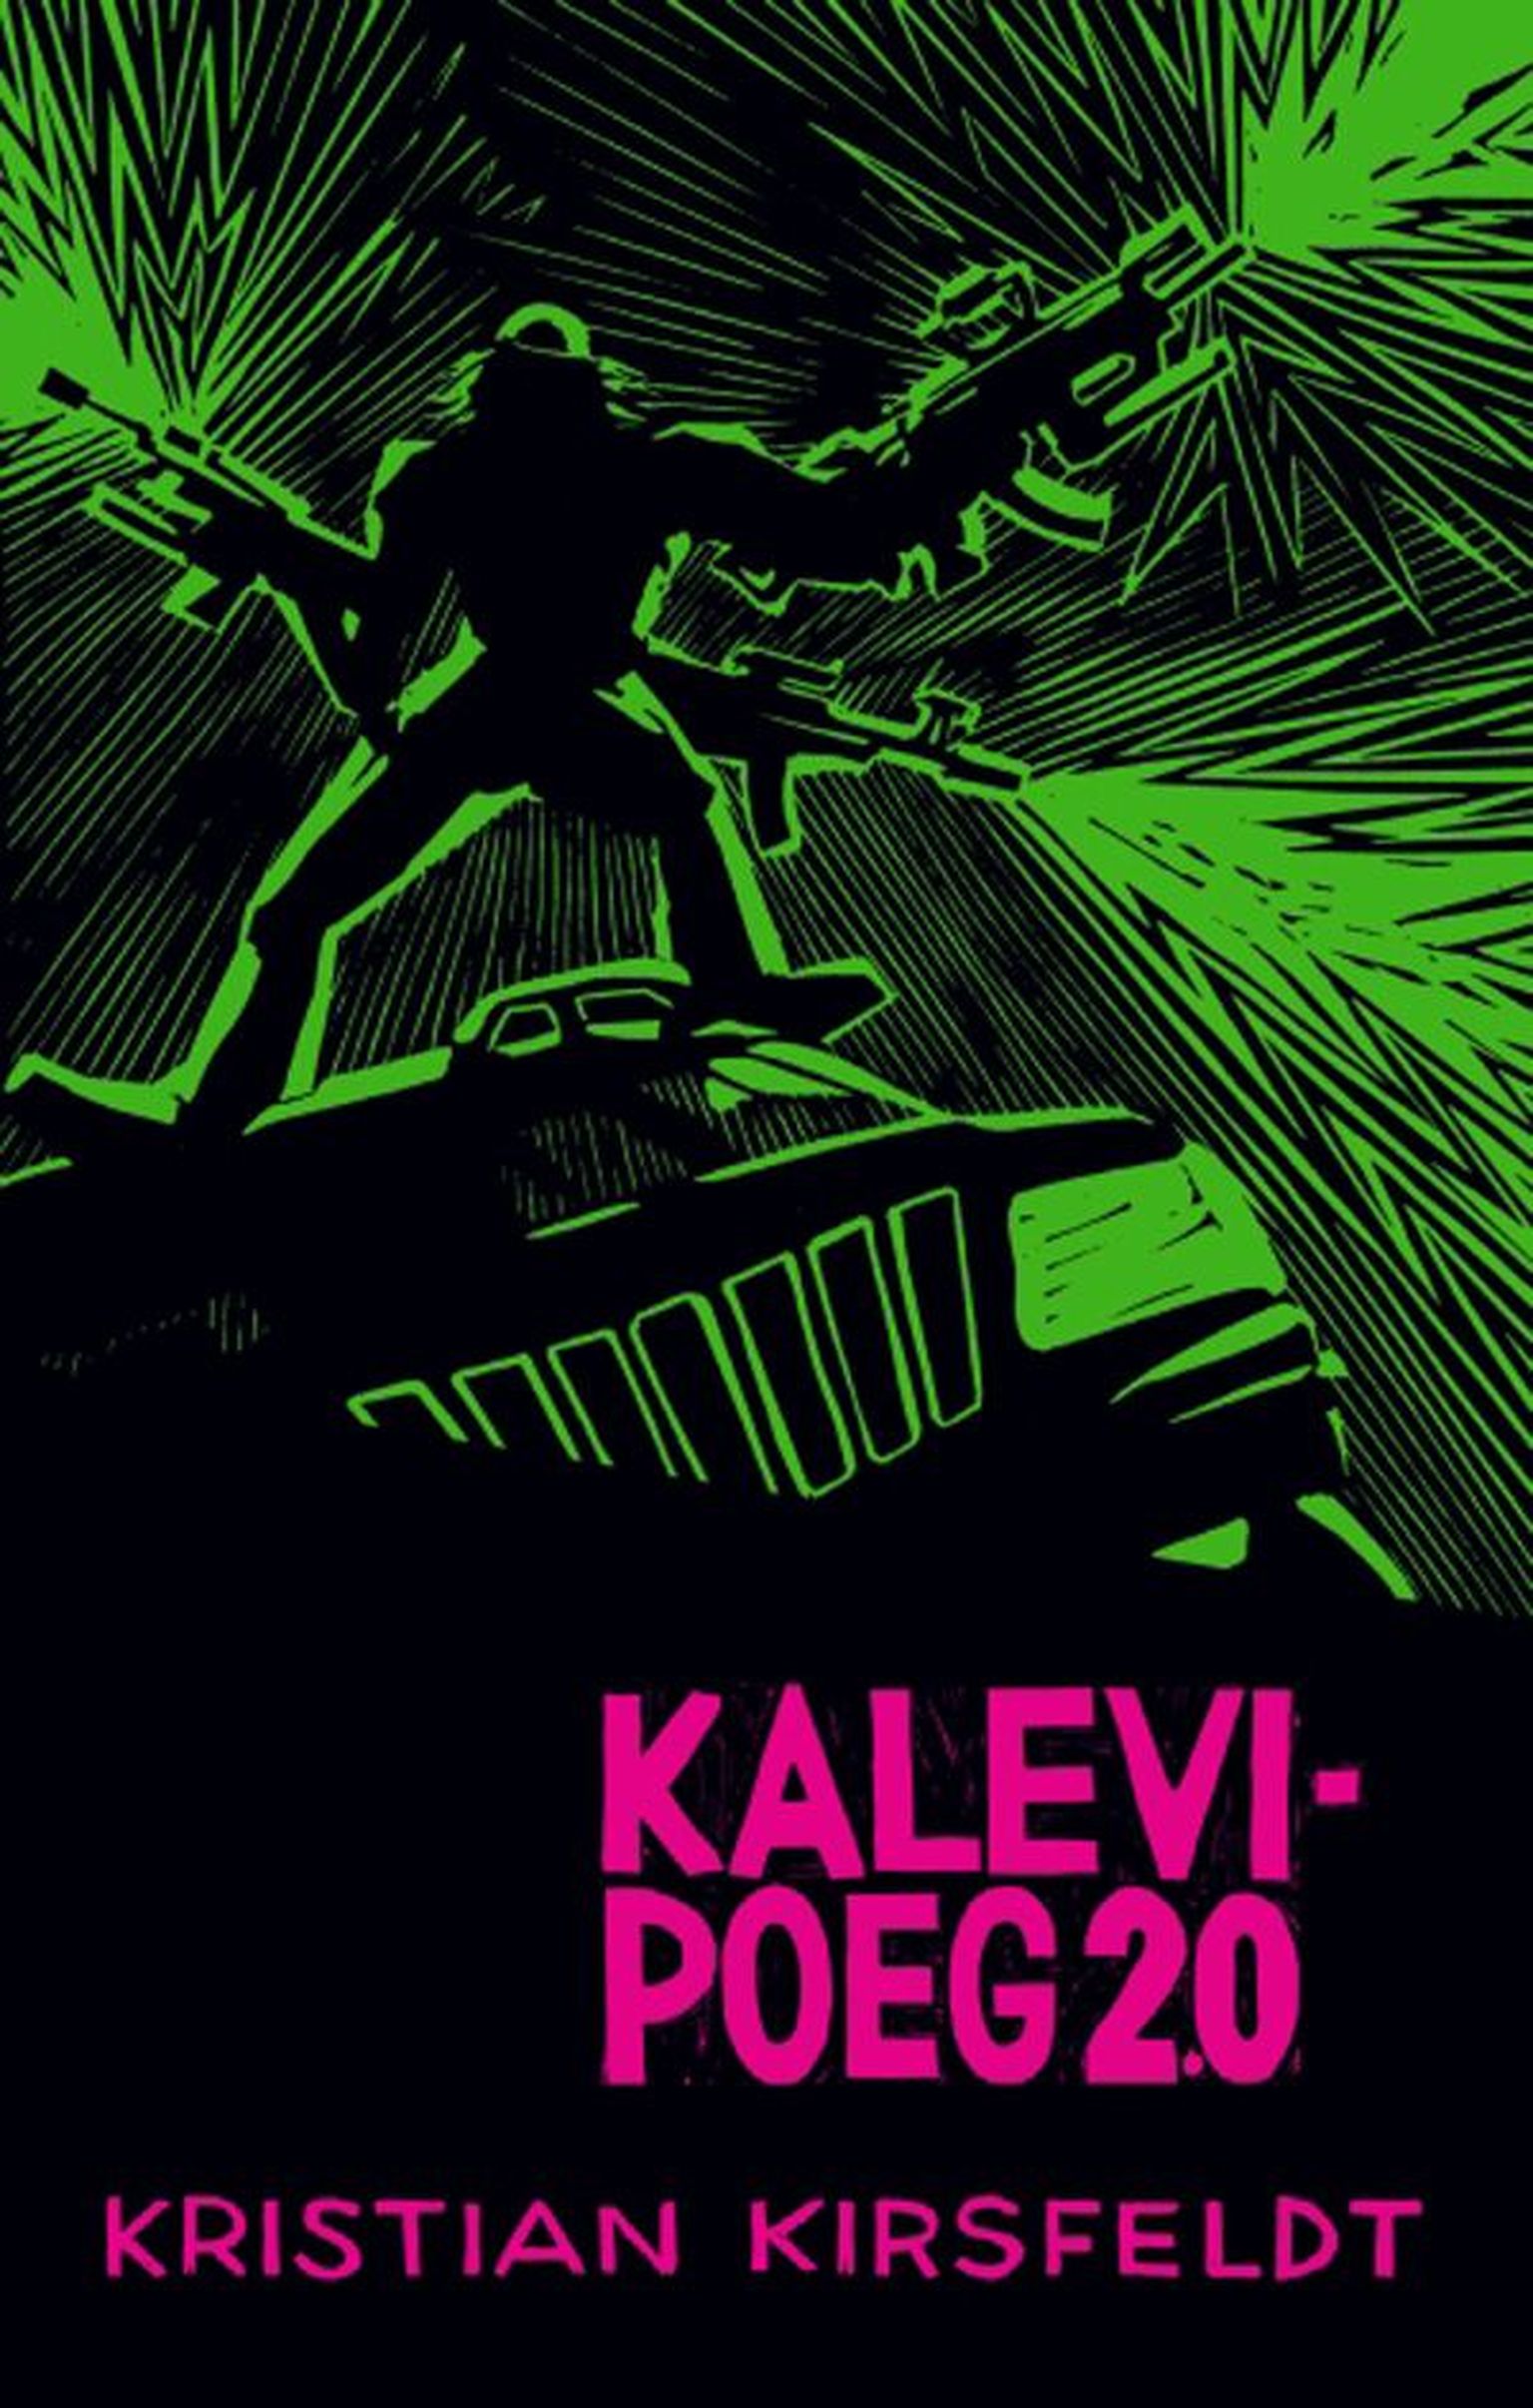 Raamat
«Kalevi­poeg 2.0»
Kristian Kirsfeldt 
AS Eesti Ajalehed 2010